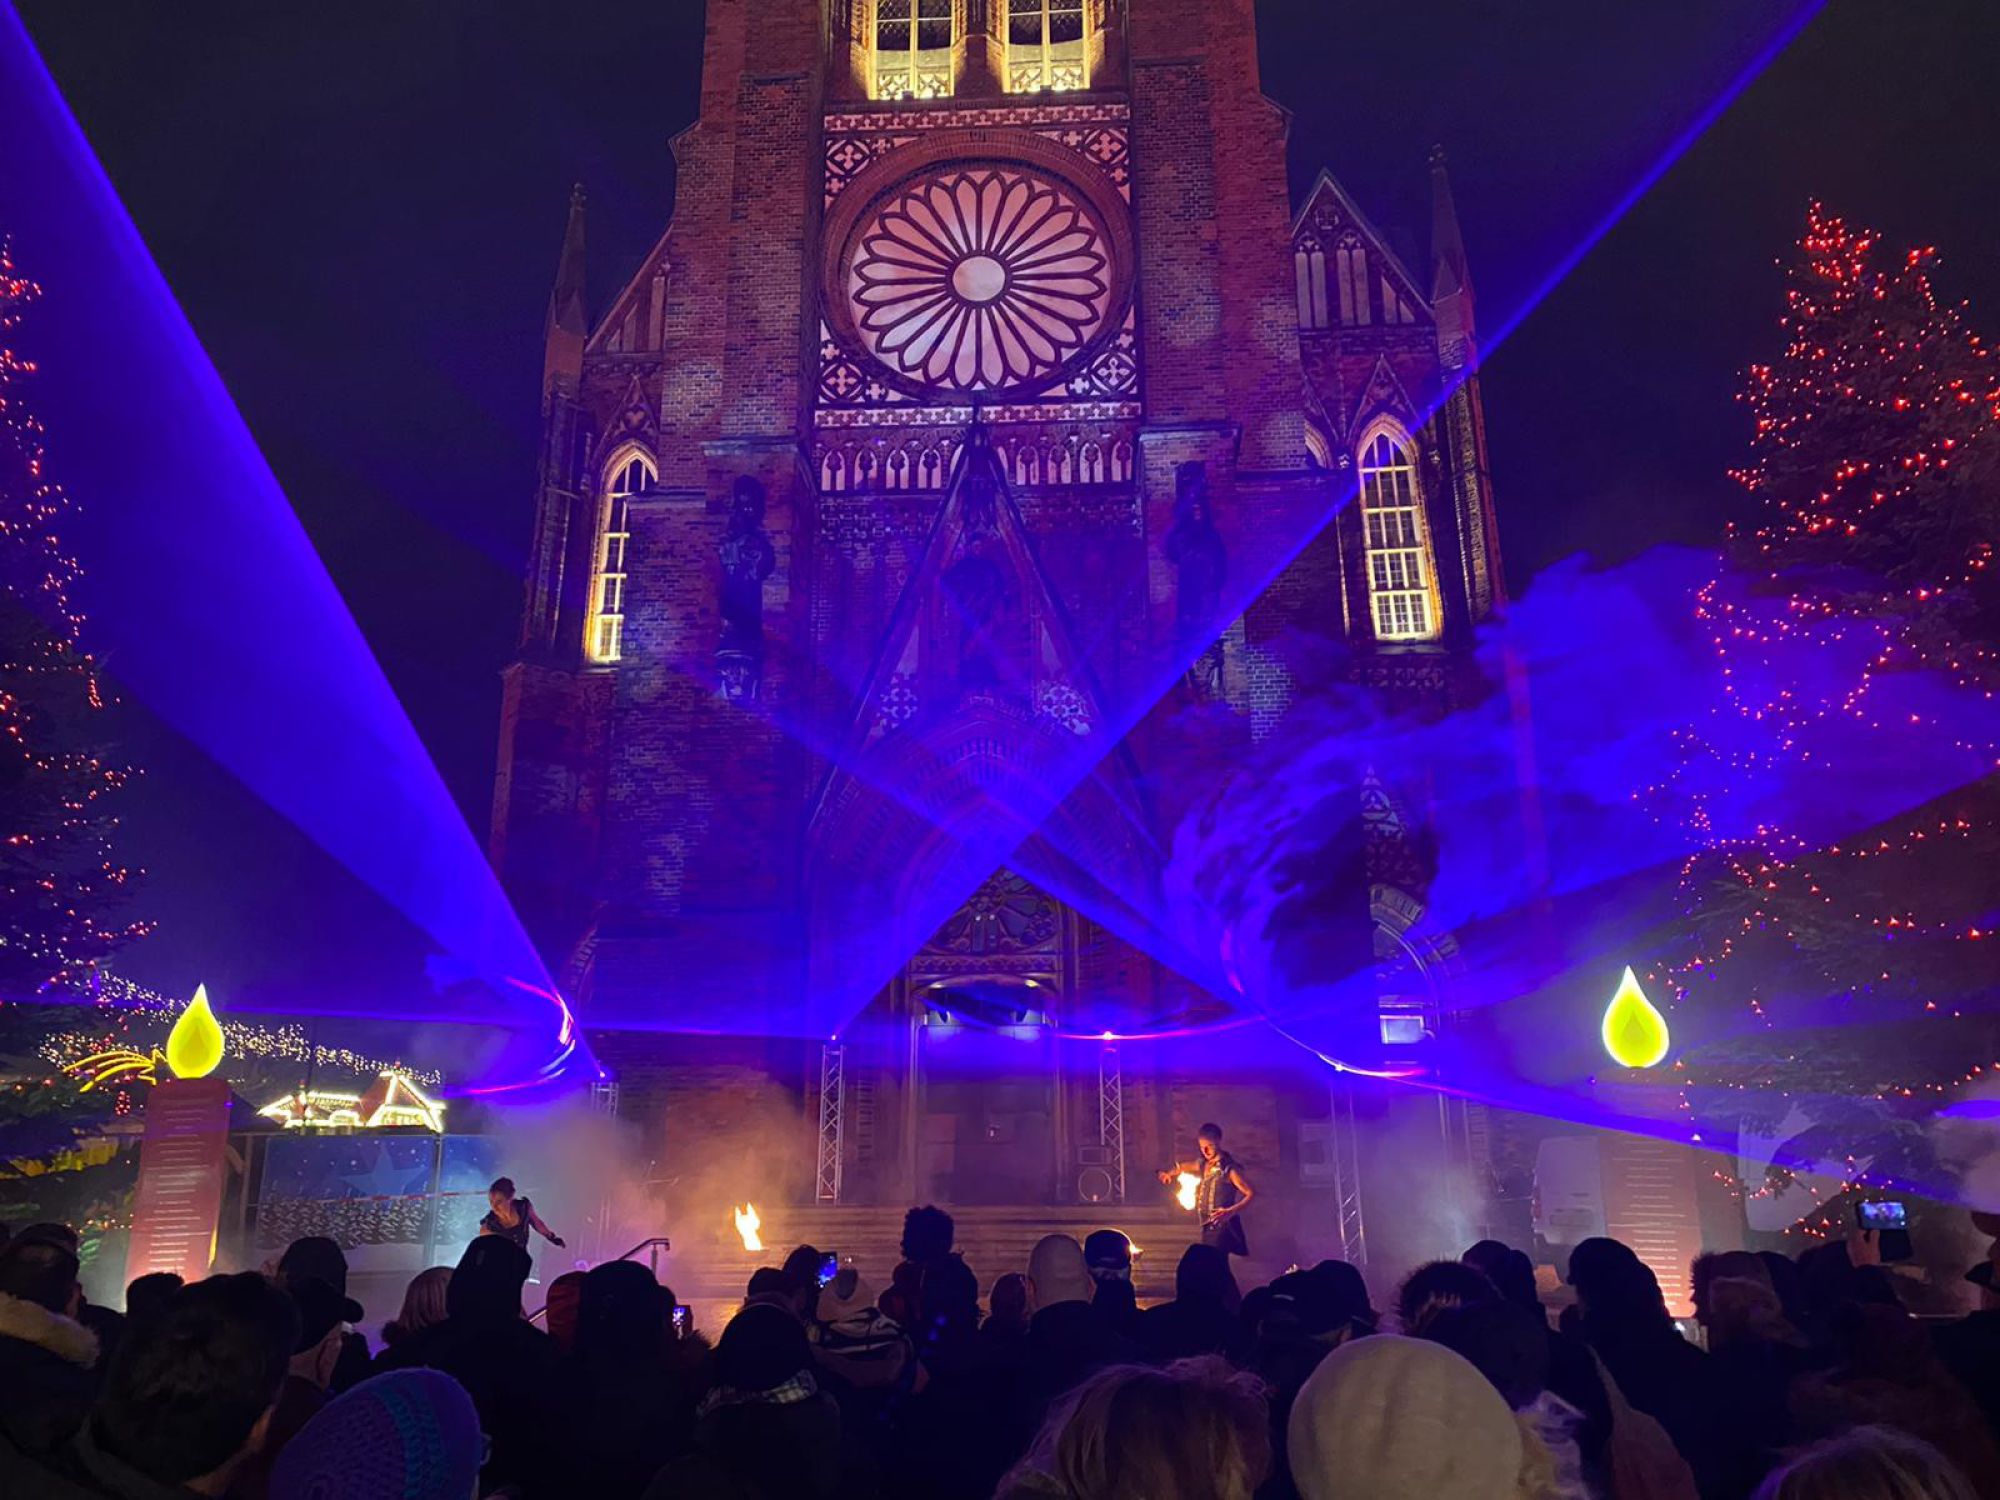 Weihnachtsmarkt in Bremerhaven mit stimmungsvoller Lasershow